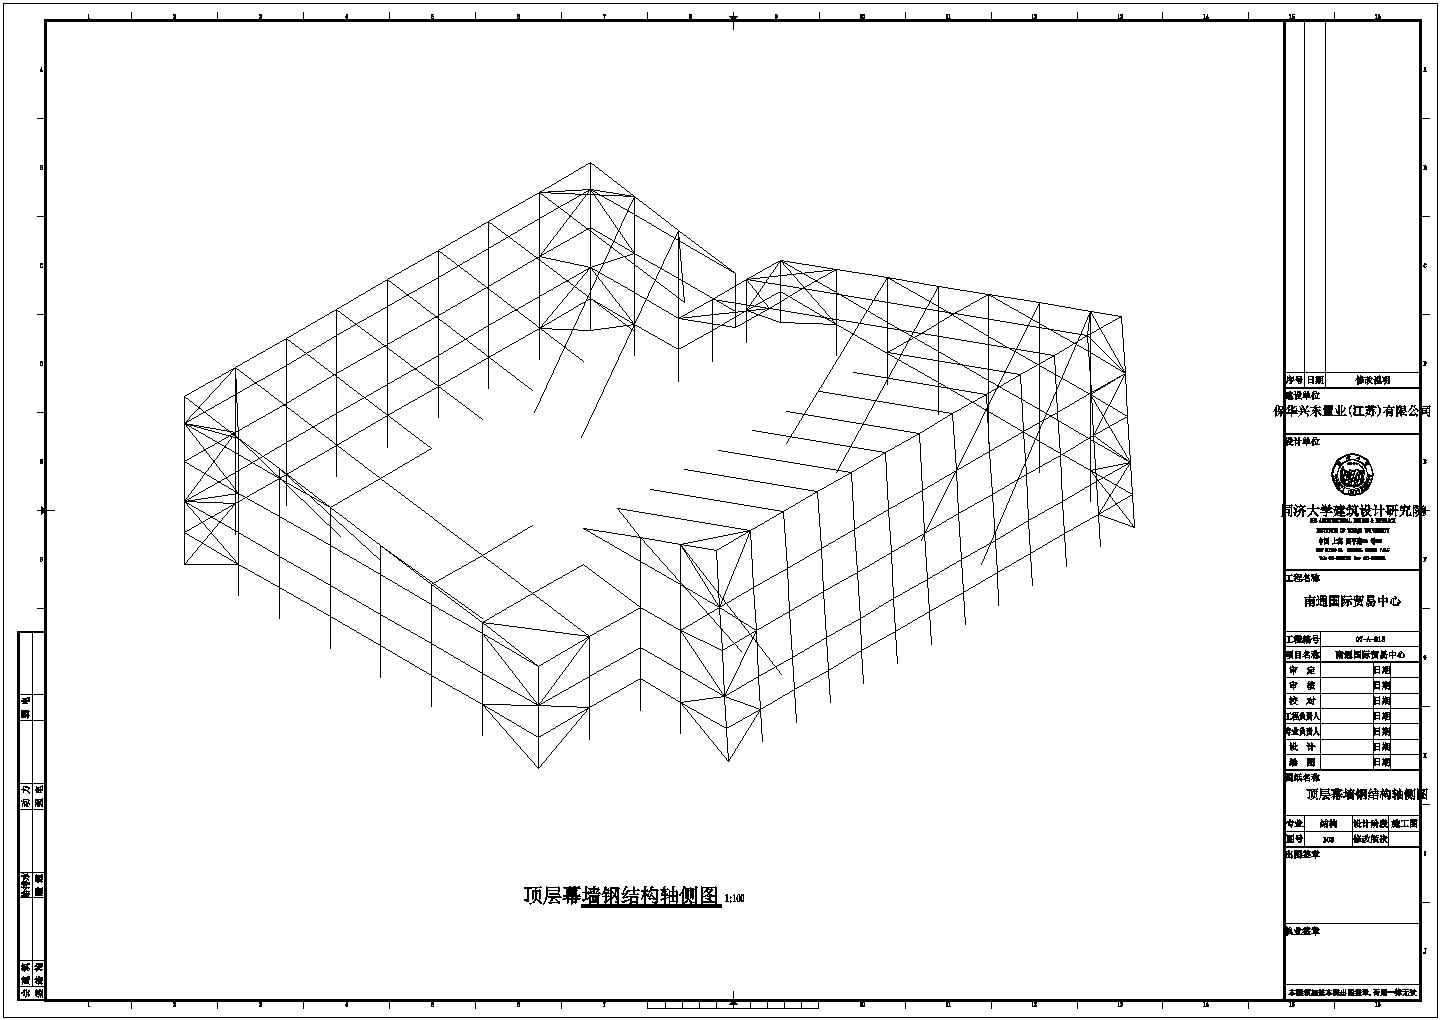 南昌国际贸易中心门厅钢结构详细建筑施工图